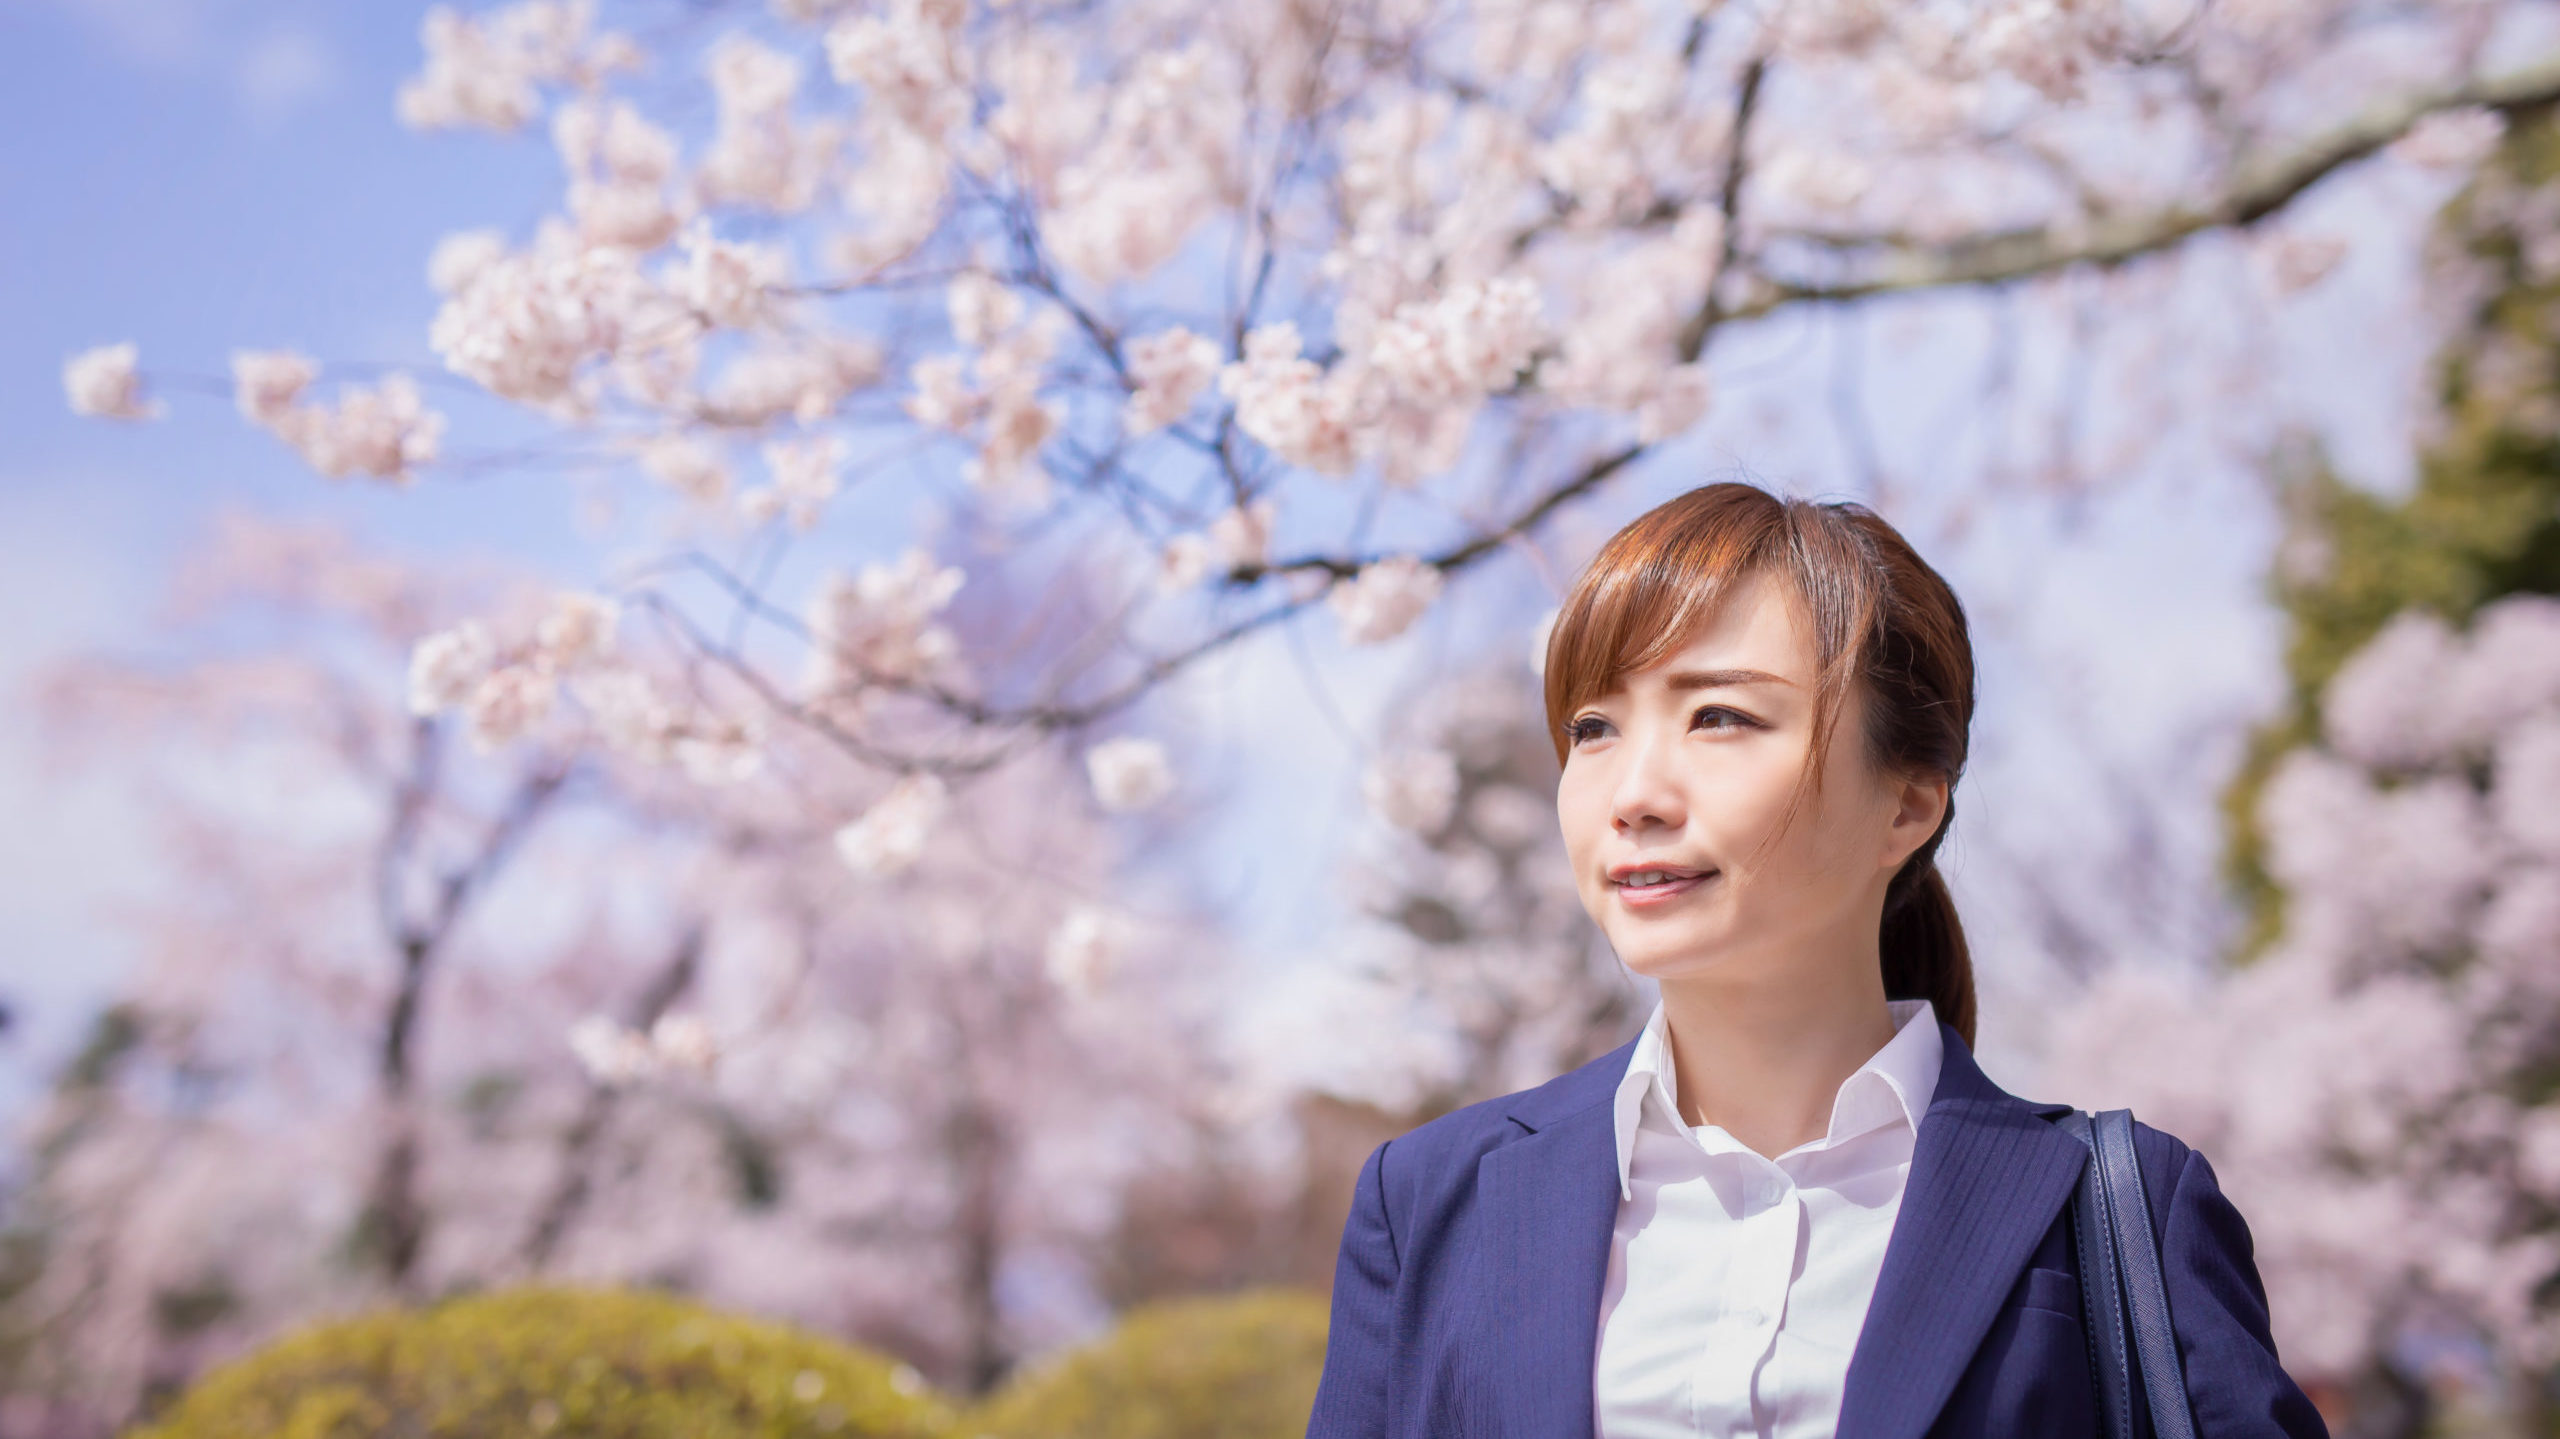 桜とスーツ姿の女性